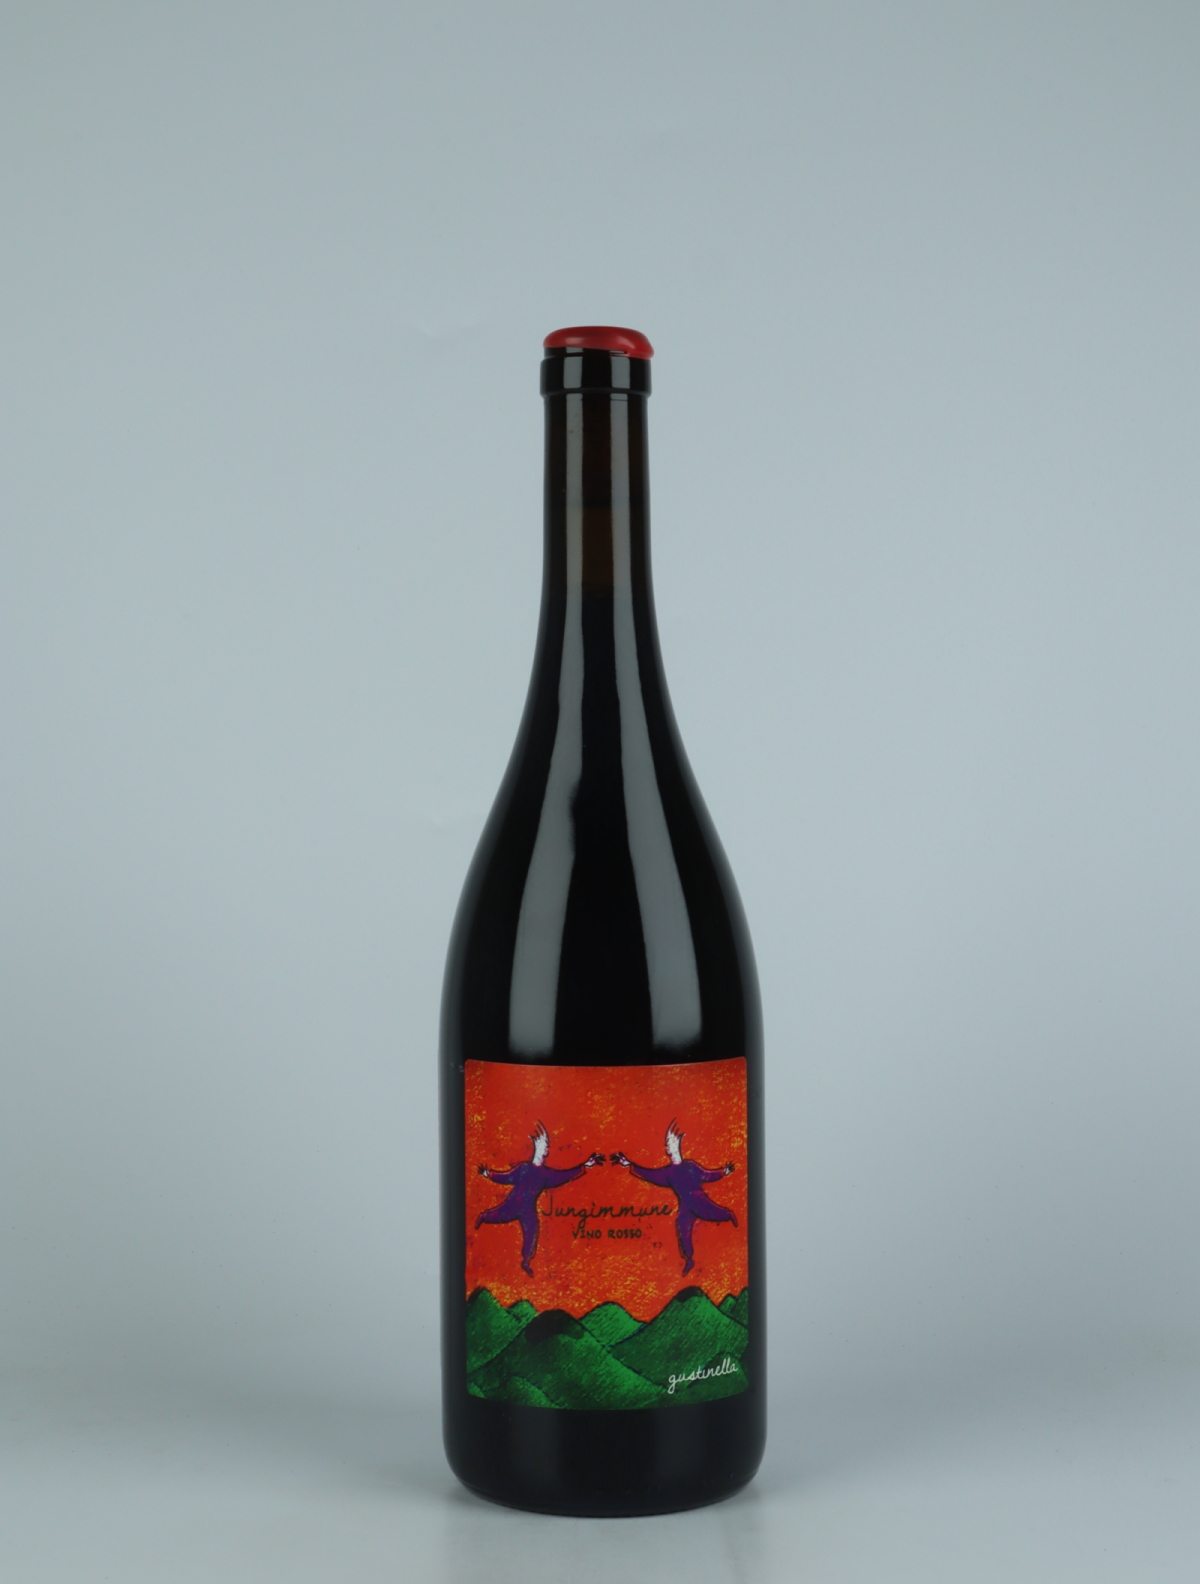 En flaske 2021 Jungimmune Rosso Rødvin fra Gustinella, Sicilien i Italien